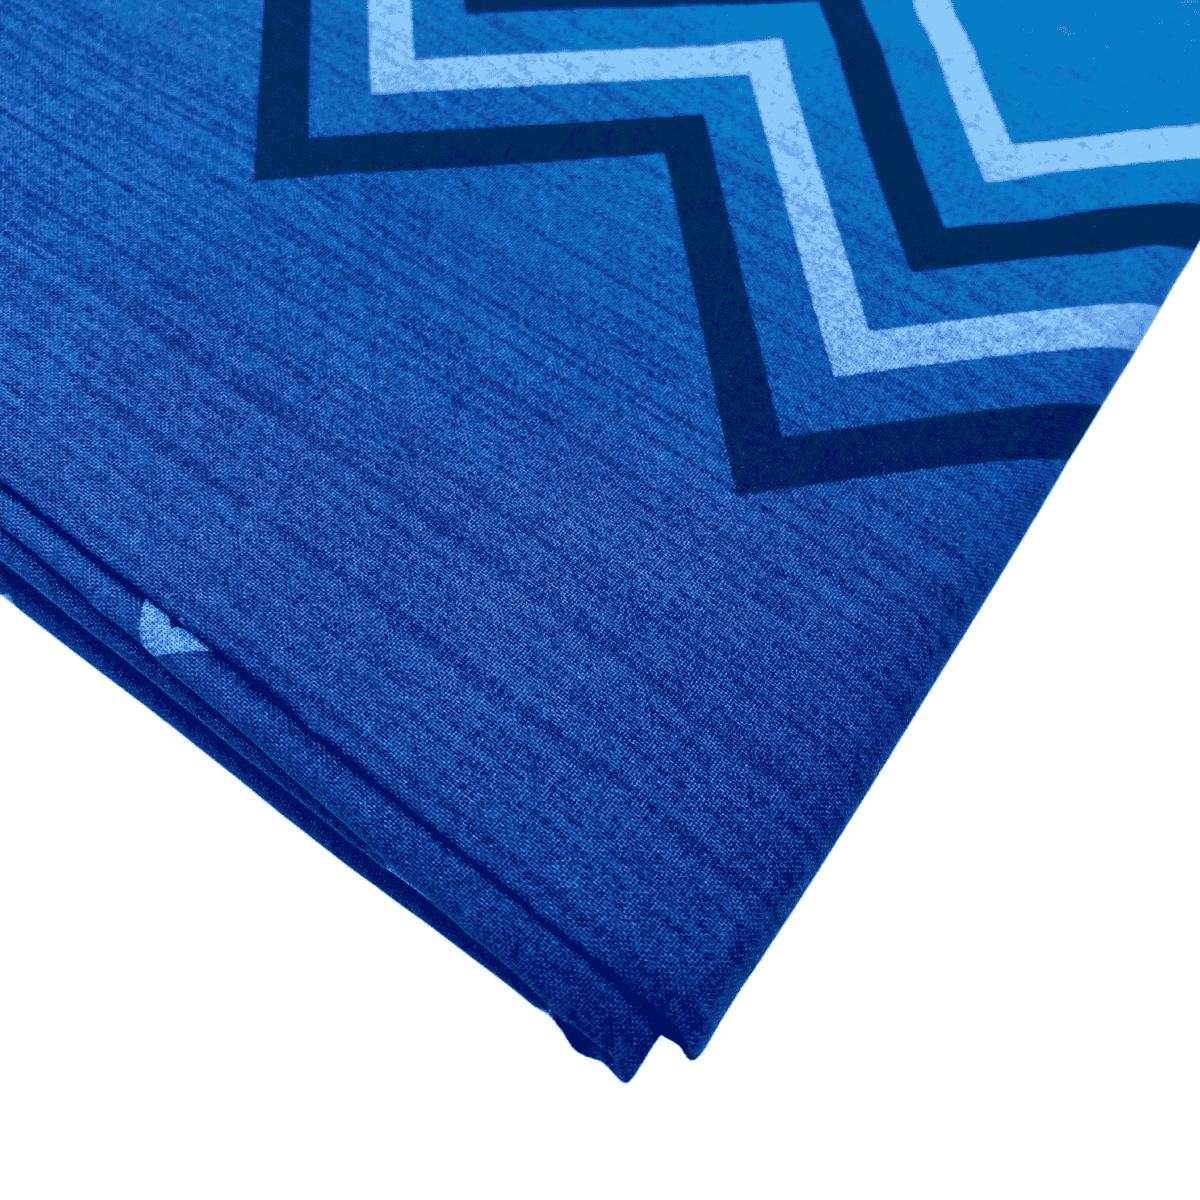 dettaglio-zigzag-blu-telo-arredo-copritutto-tuttofare-quadrifoglio-cotone-made-in-italy-1-piazza-180x300cm-2-piazze-260x300cm